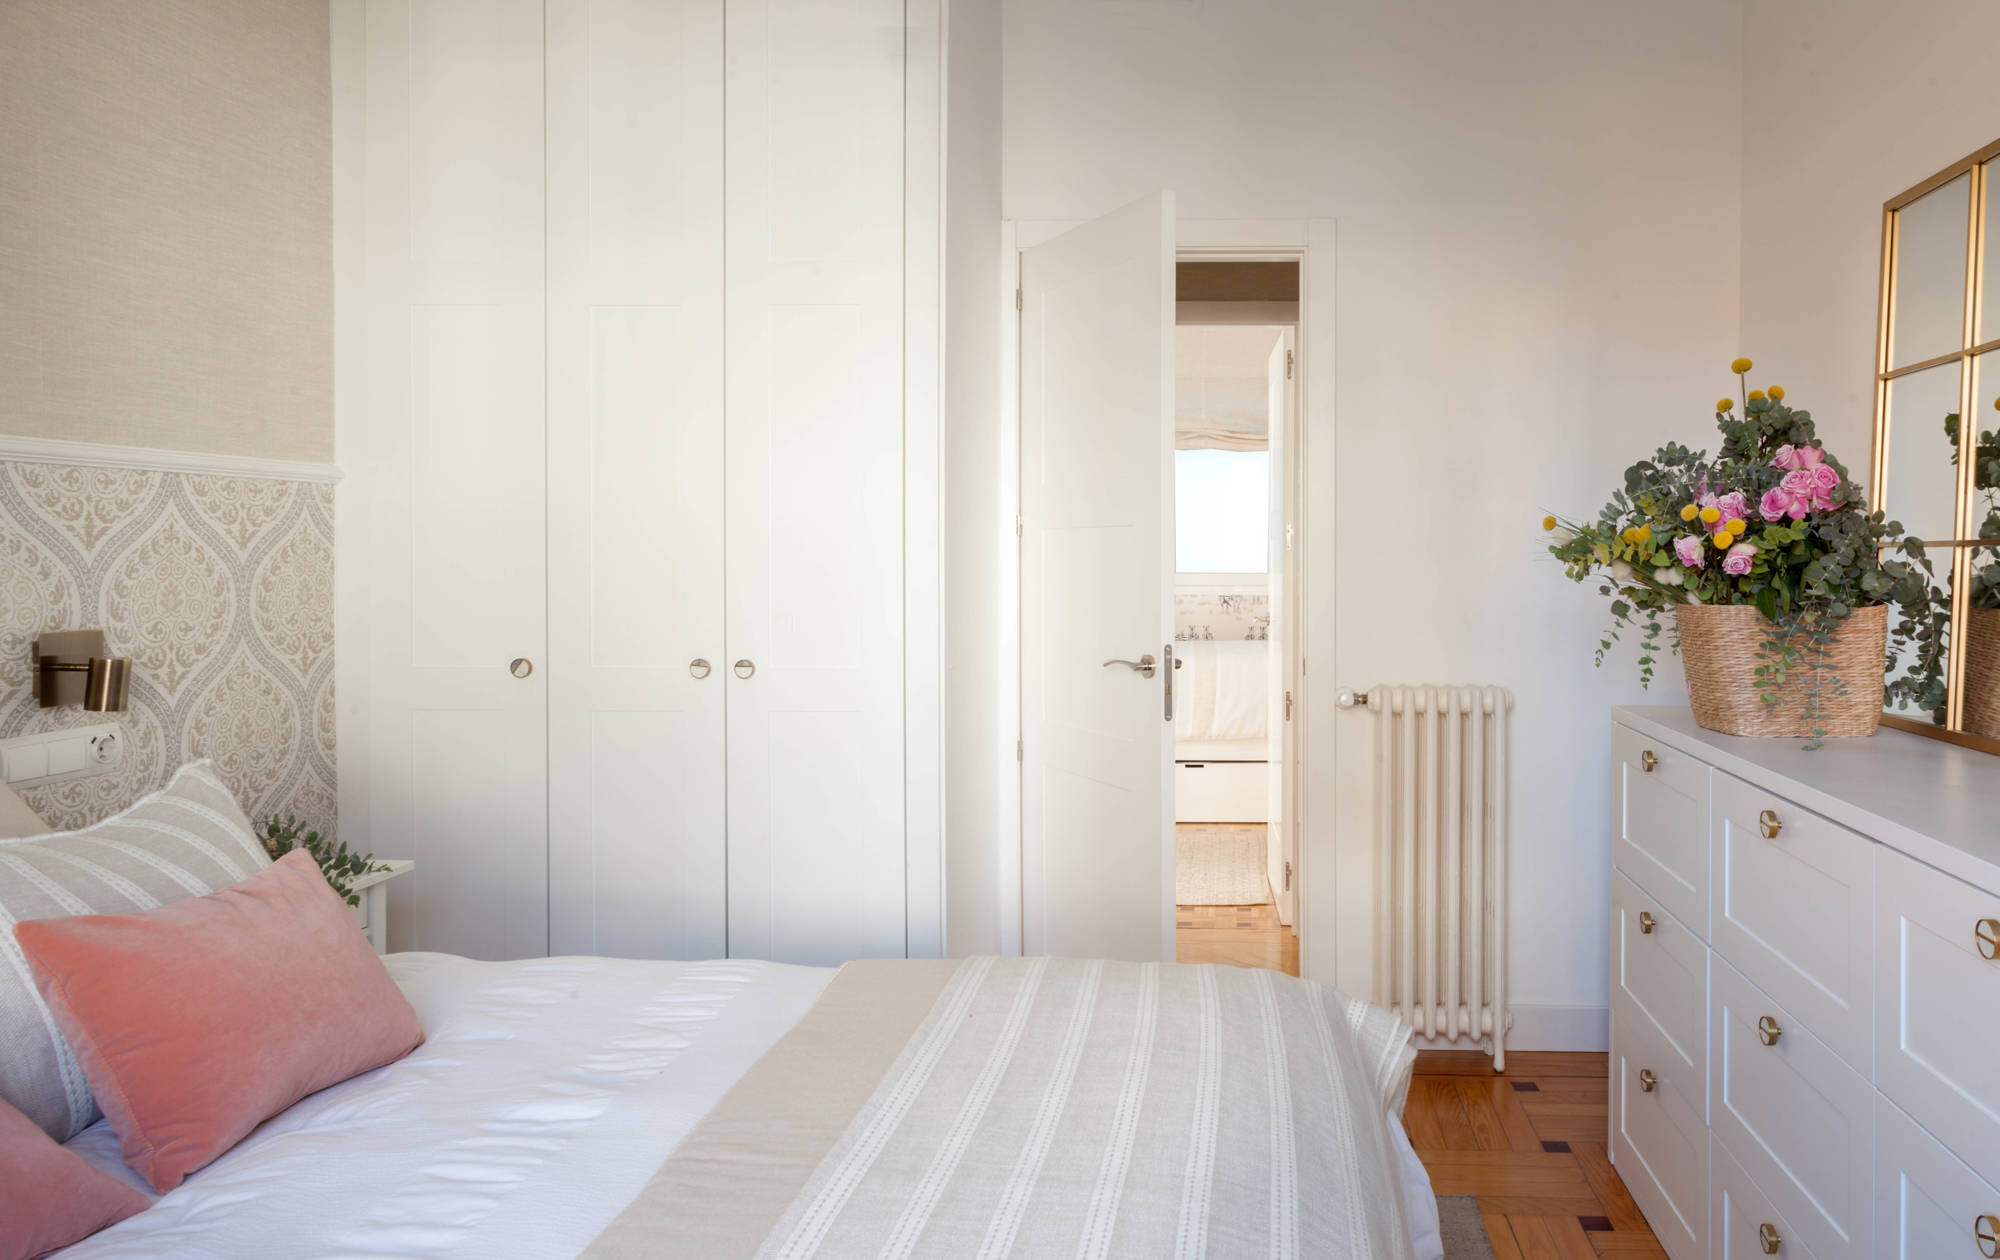 Dormitorio principal con armarios, cómoda, flores, cojines rosas empolvados y papel pintado.